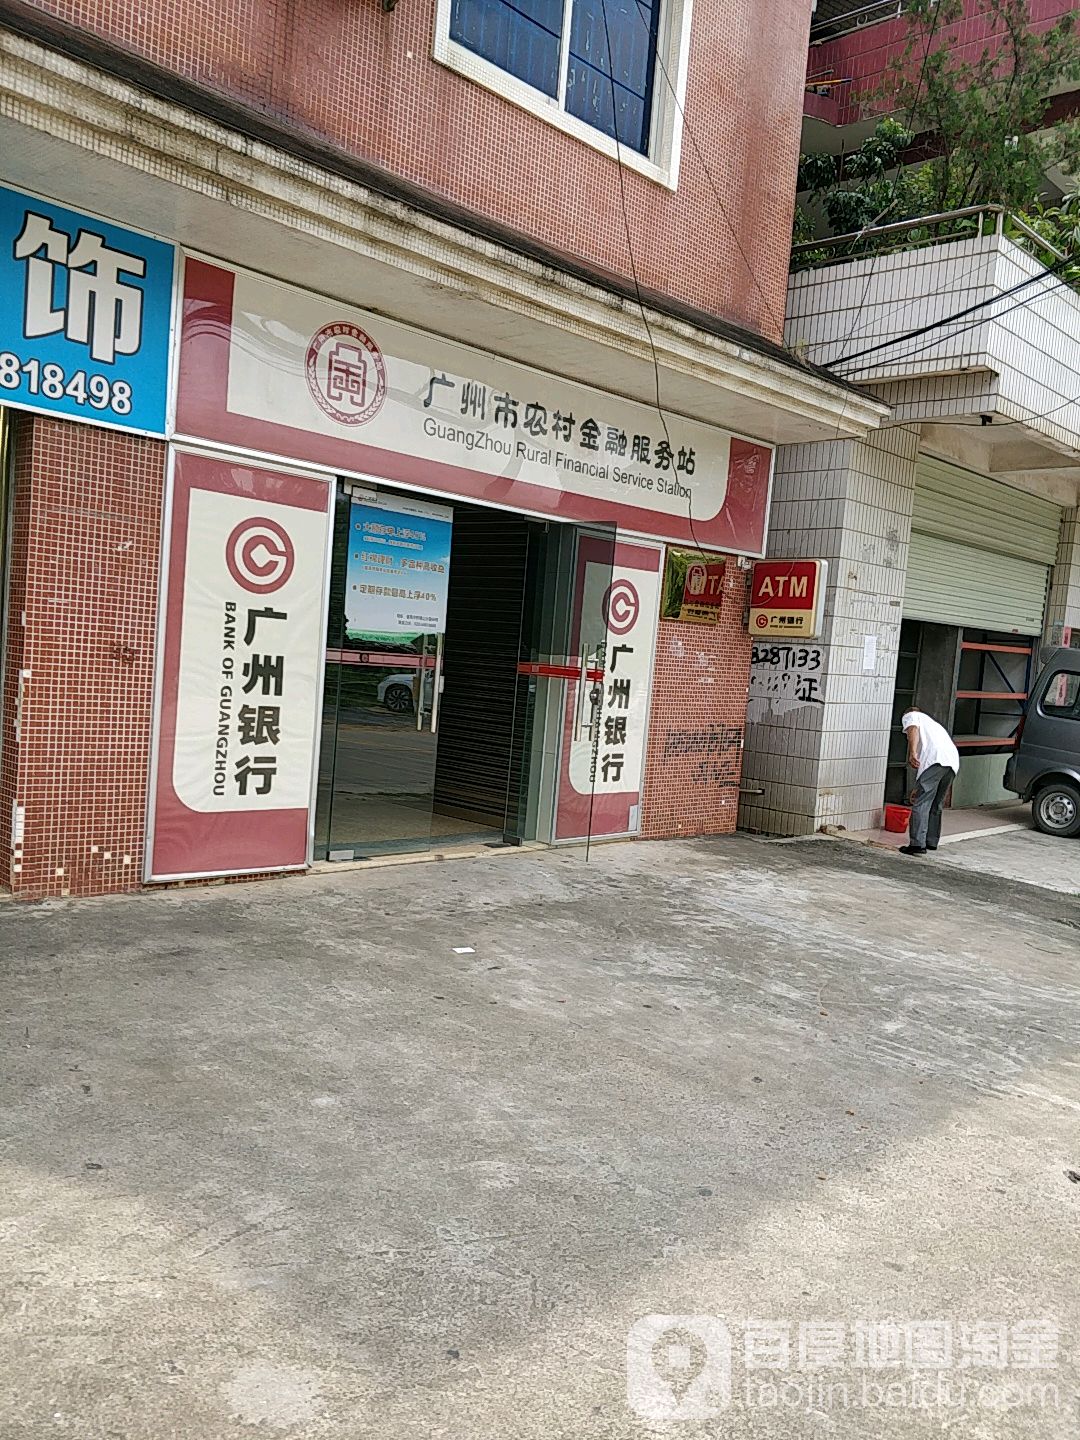 广州市农村金融服务站(为民中路)